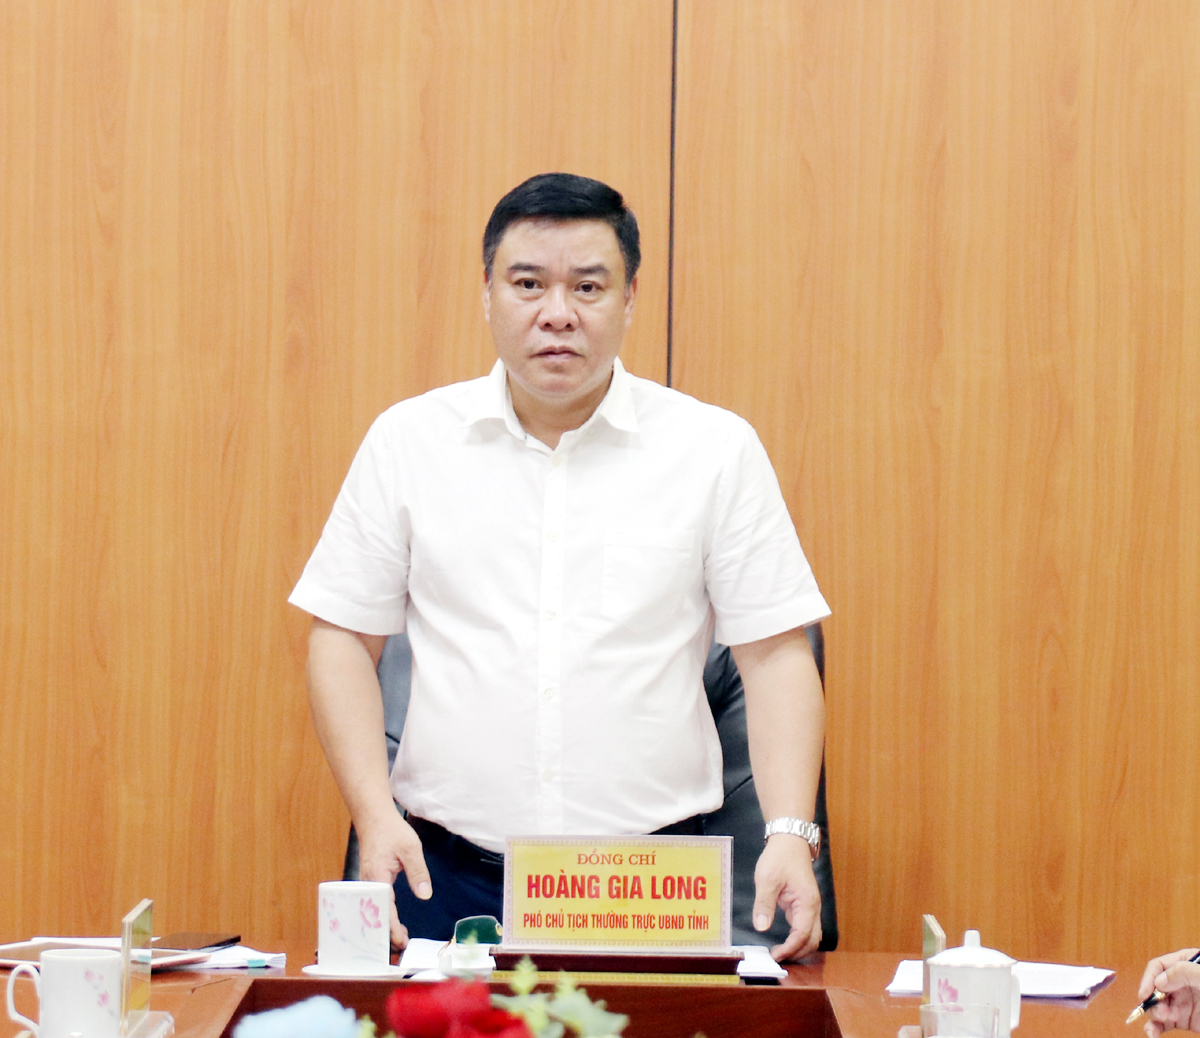 Phó Chủ tịch Thường trực UBND tỉnh Hoàng Gia Long kết luận cuộc họp.